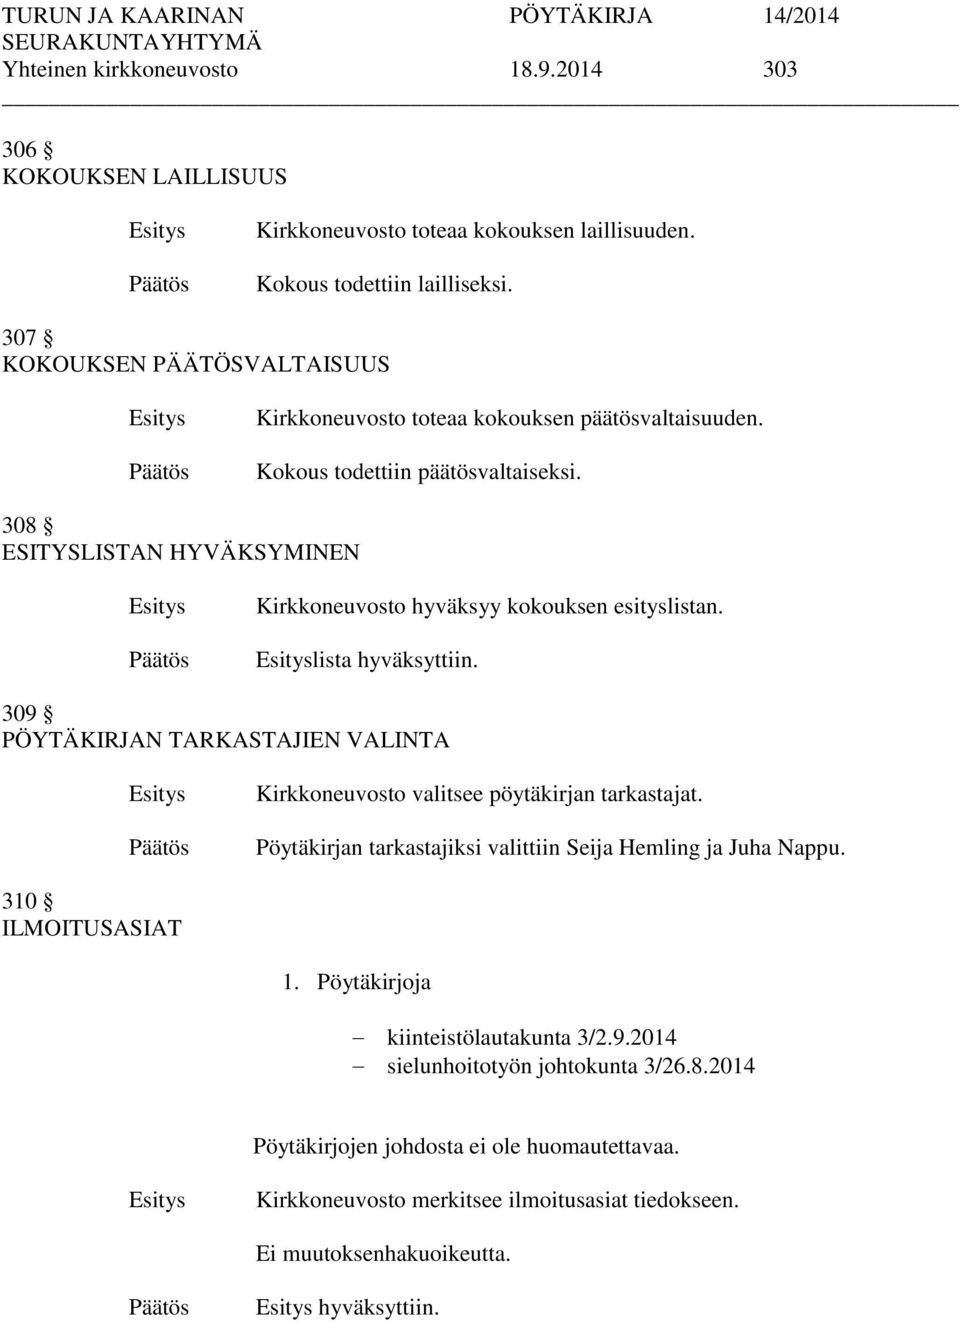 308 ESITYSLISTAN HYVÄKSYMINEN Kirkkoneuvosto hyväksyy kokouksen esityslistan. lista hyväksyttiin.